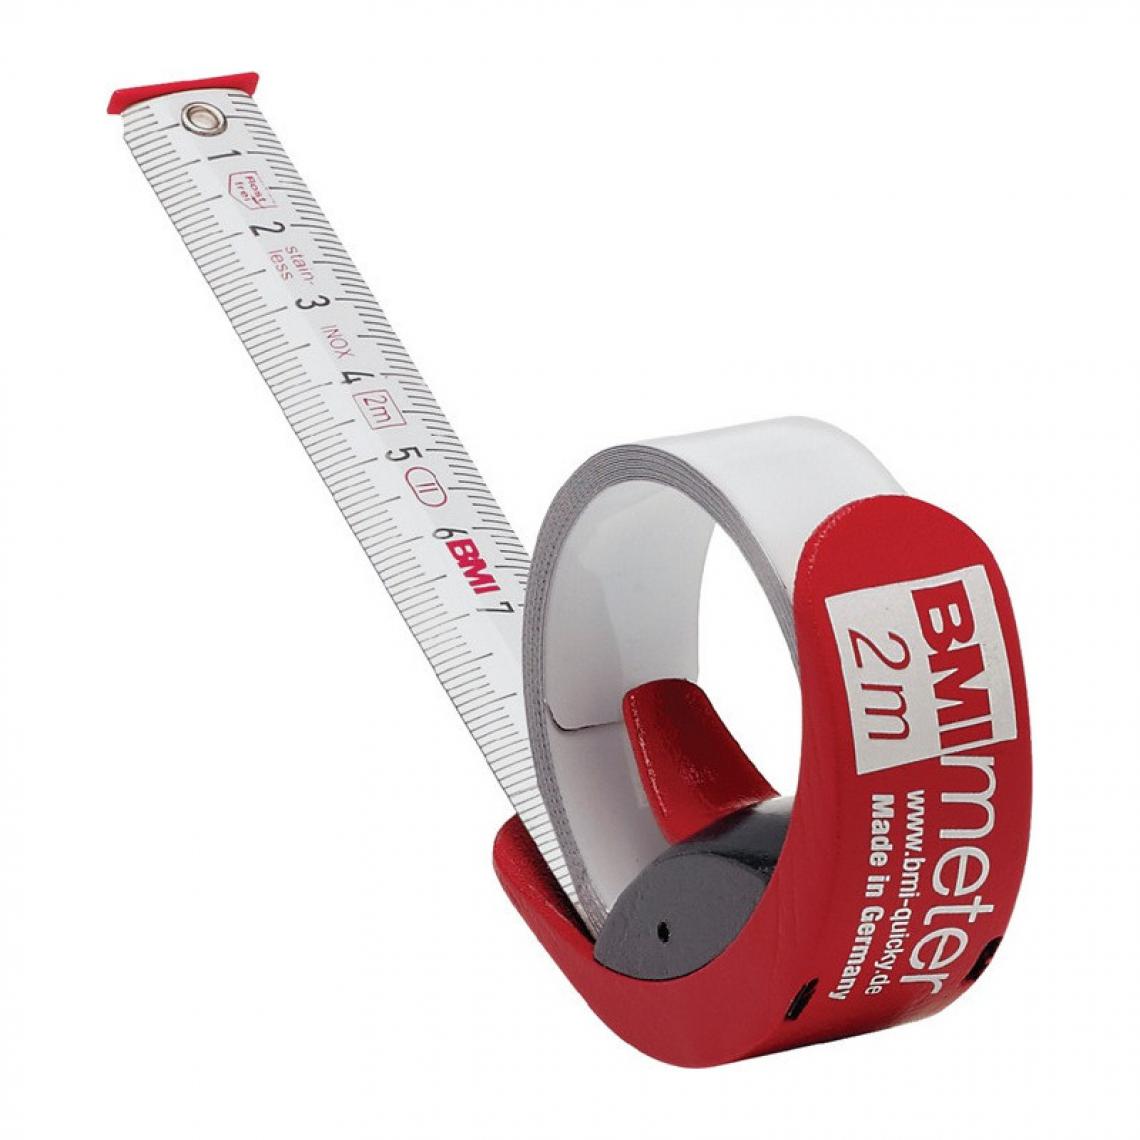 Bmi - Mètre-ruban de poche BMImeter longueur 2 m largeur 16 mm mm/cm EG II fonction de règle en plastique plastique fonction règle BMI - Mètres